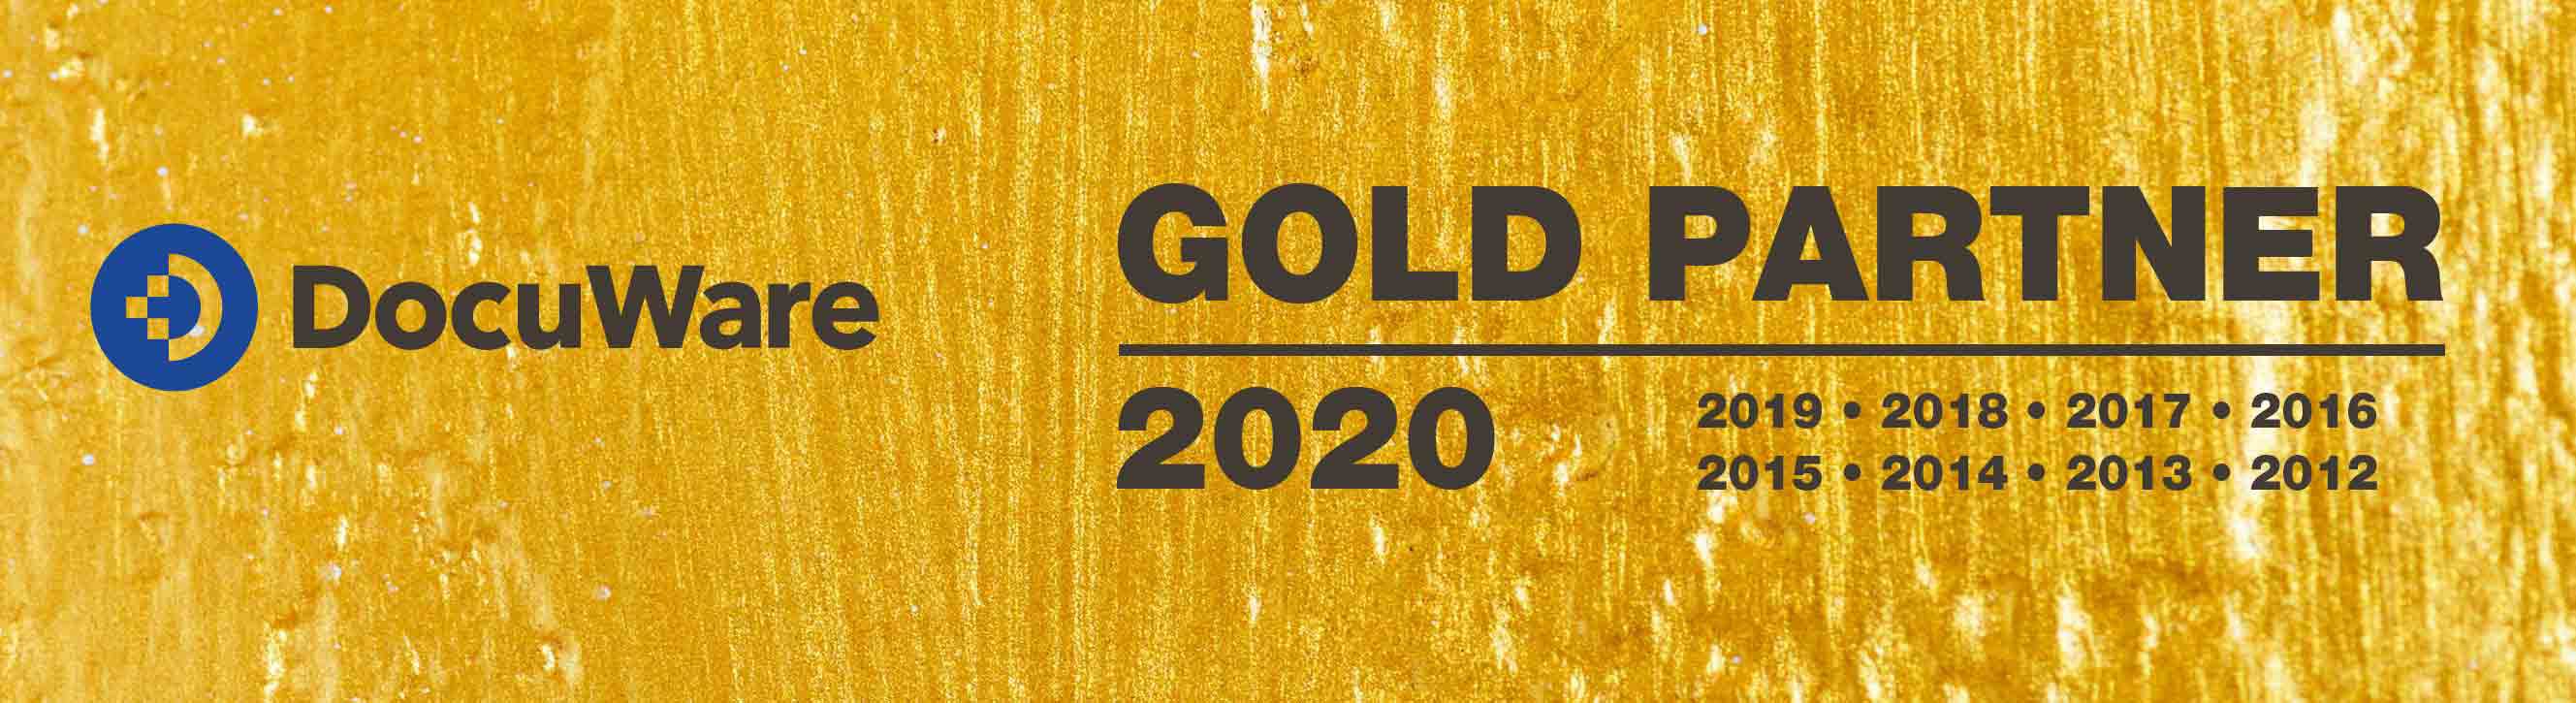 TANTZKY 2020 DocuWare Gold Partner Logo auf goldenem Hintergrund, Jahrszahlen 2012, 2013, 2014, 2015, 2016, 2017, 2018, 2019